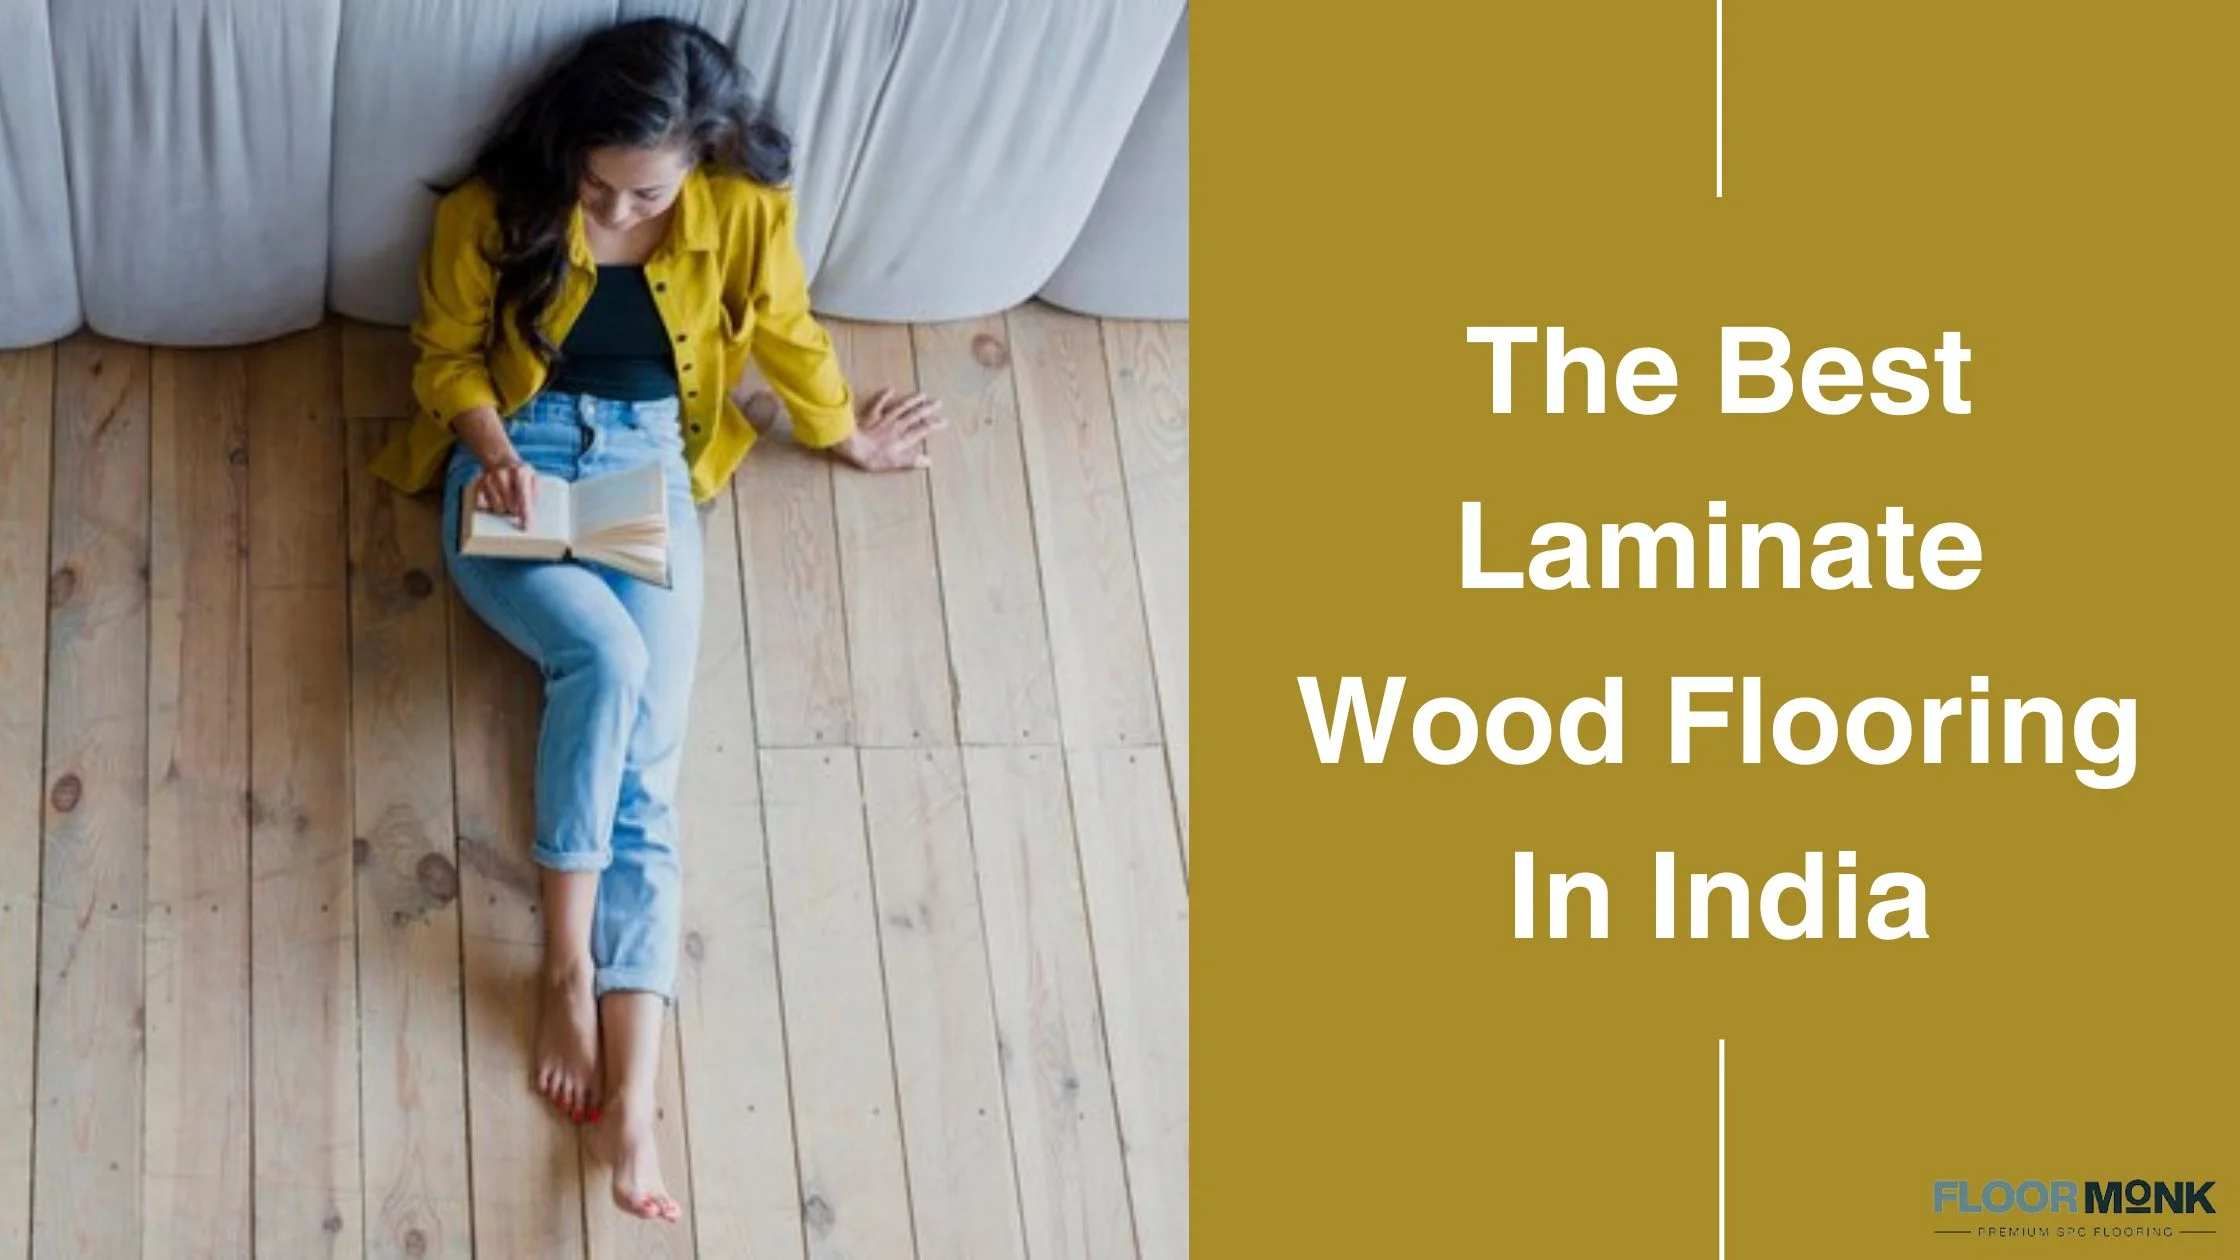 The Best Laminate Wood Flooring In India